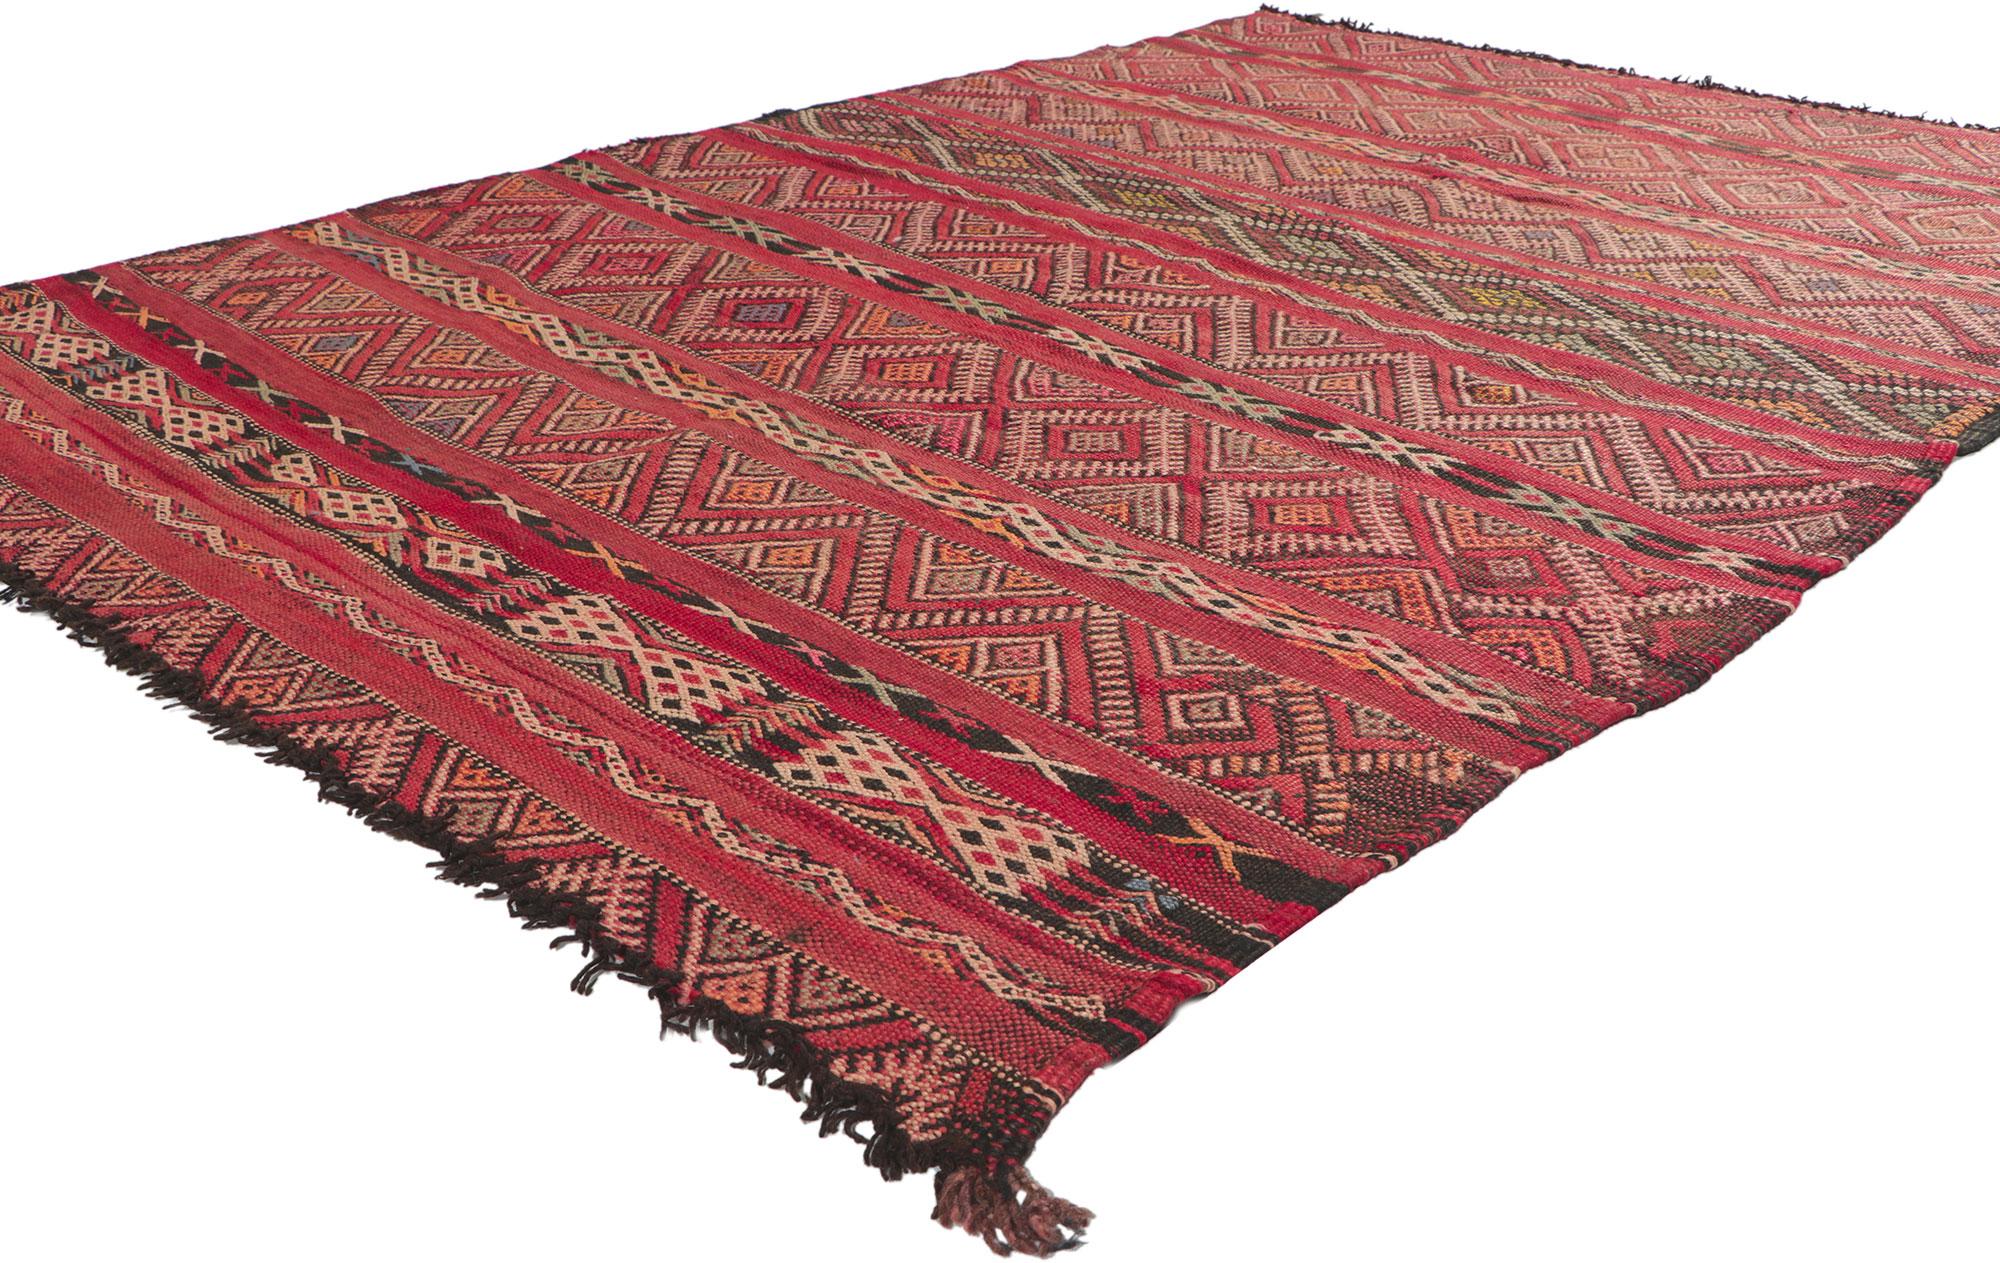 78397 Vintage Zemmour Moroccan Kilim Rug, 05'03 x 07'09. Plein de petits détails et de style tribal, ce tapis kilim berbère marocain Zemmour en laine tissé à la main est une vision captivante de la beauté tissée. Le motif géométrique accrocheur